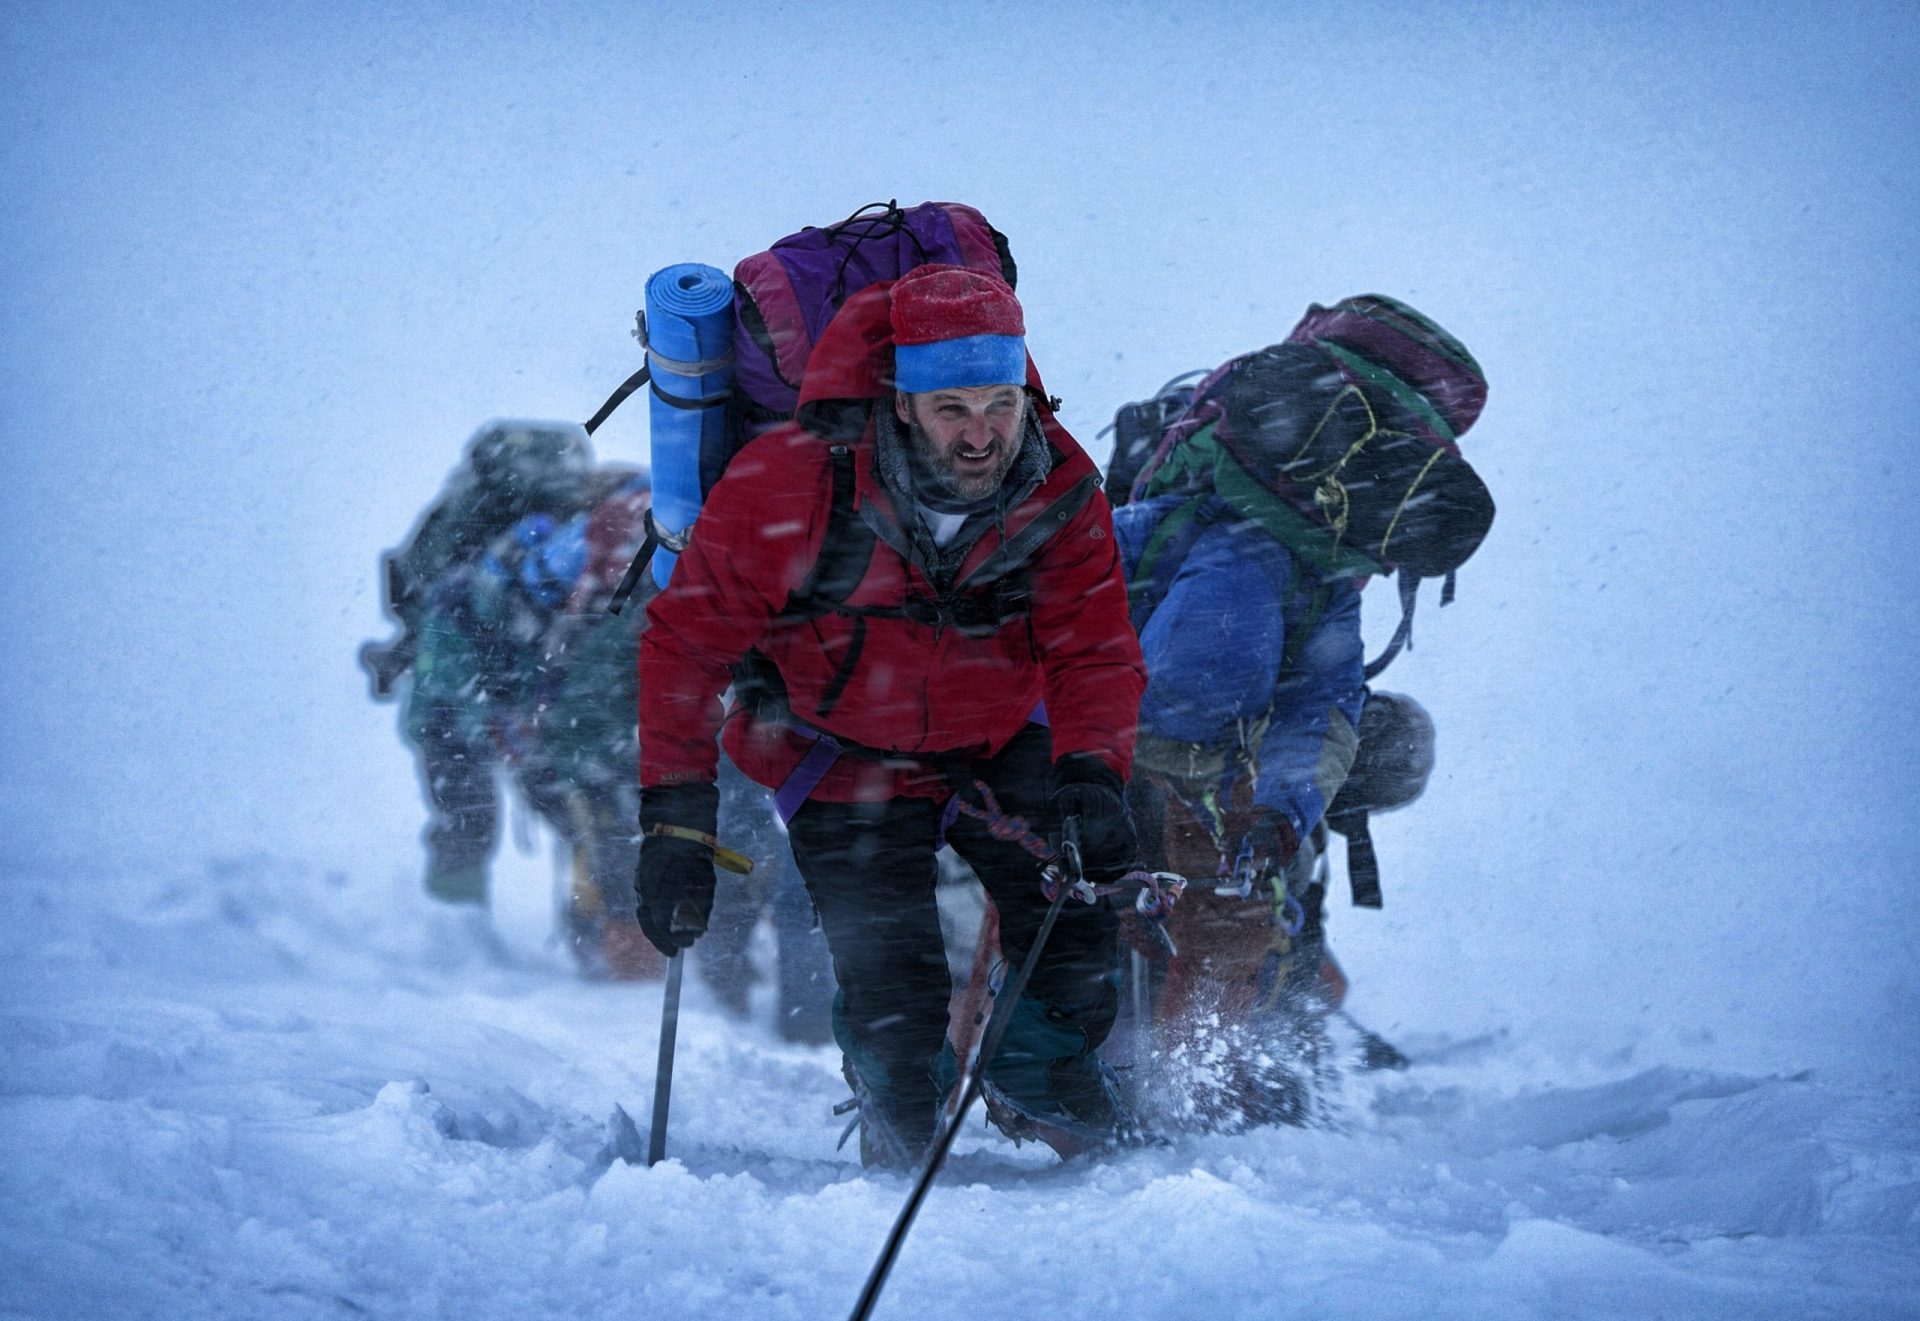 Evereste com estreia exclusiva em IMAX